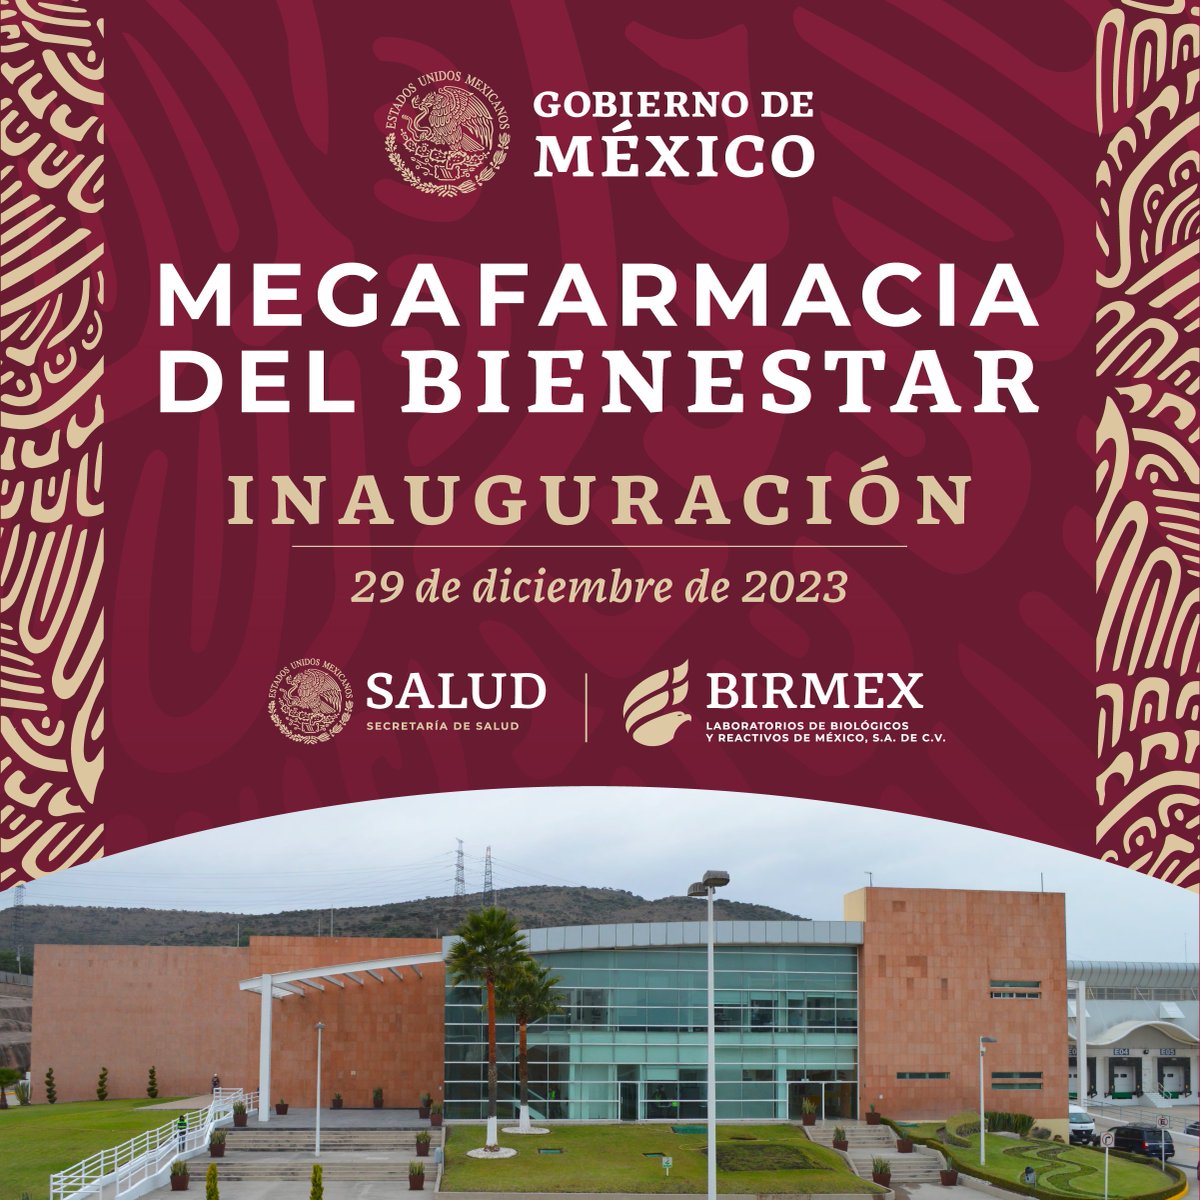 Inauguración de Megafarmacia para el Bienestar, Huehuetoca, Estado de México | 29 de diciembre, 2023.